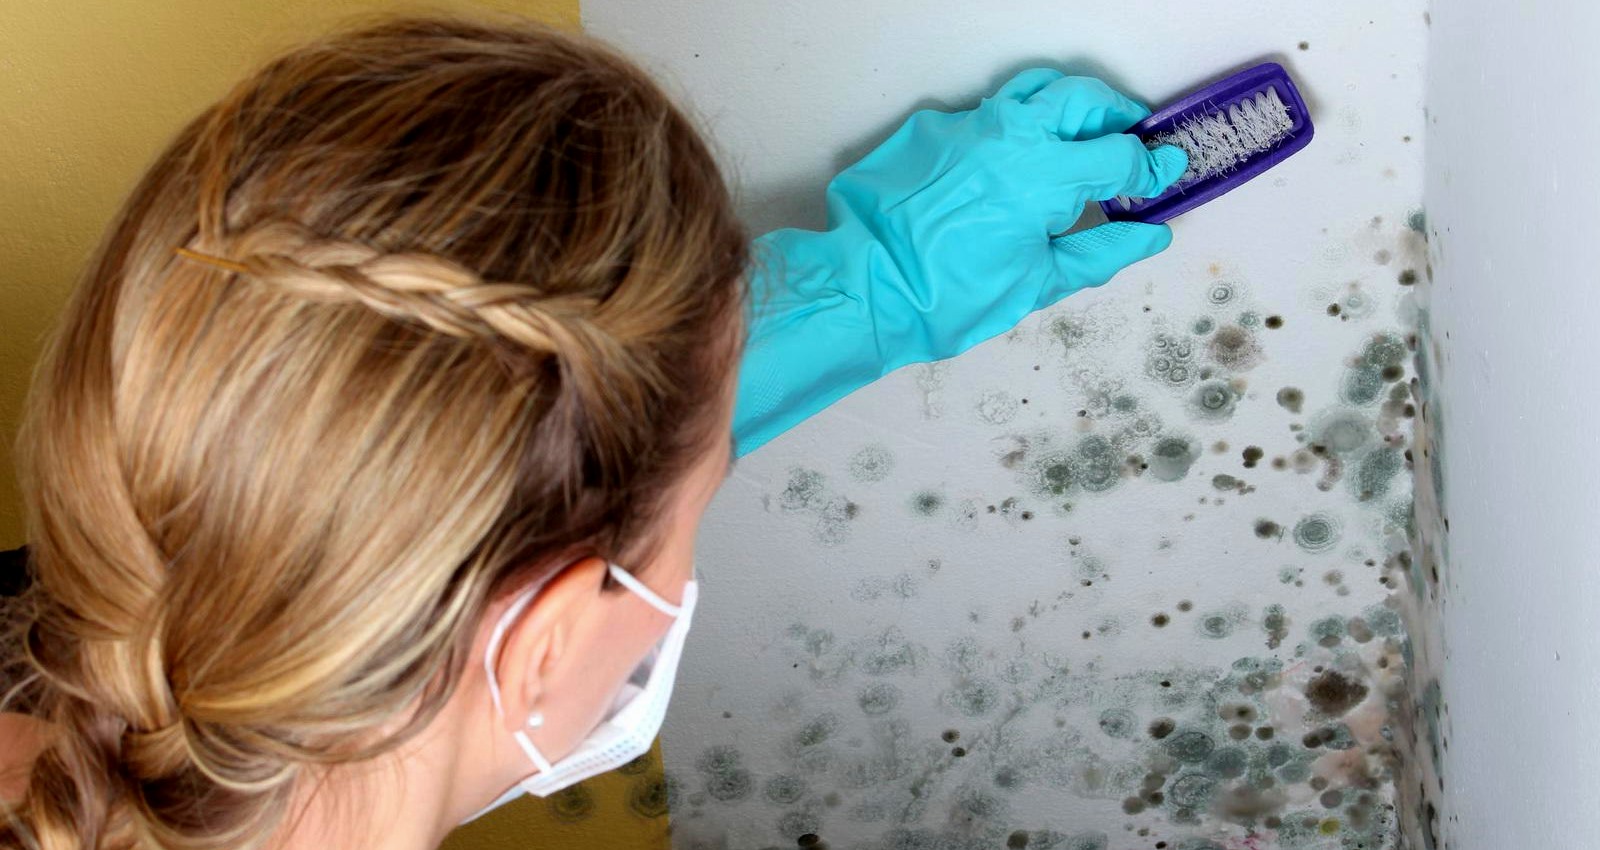  Aperçu sur le nettoyage des moisissures dans une maison et la valeur ajoutée de l’expérience professionnelle